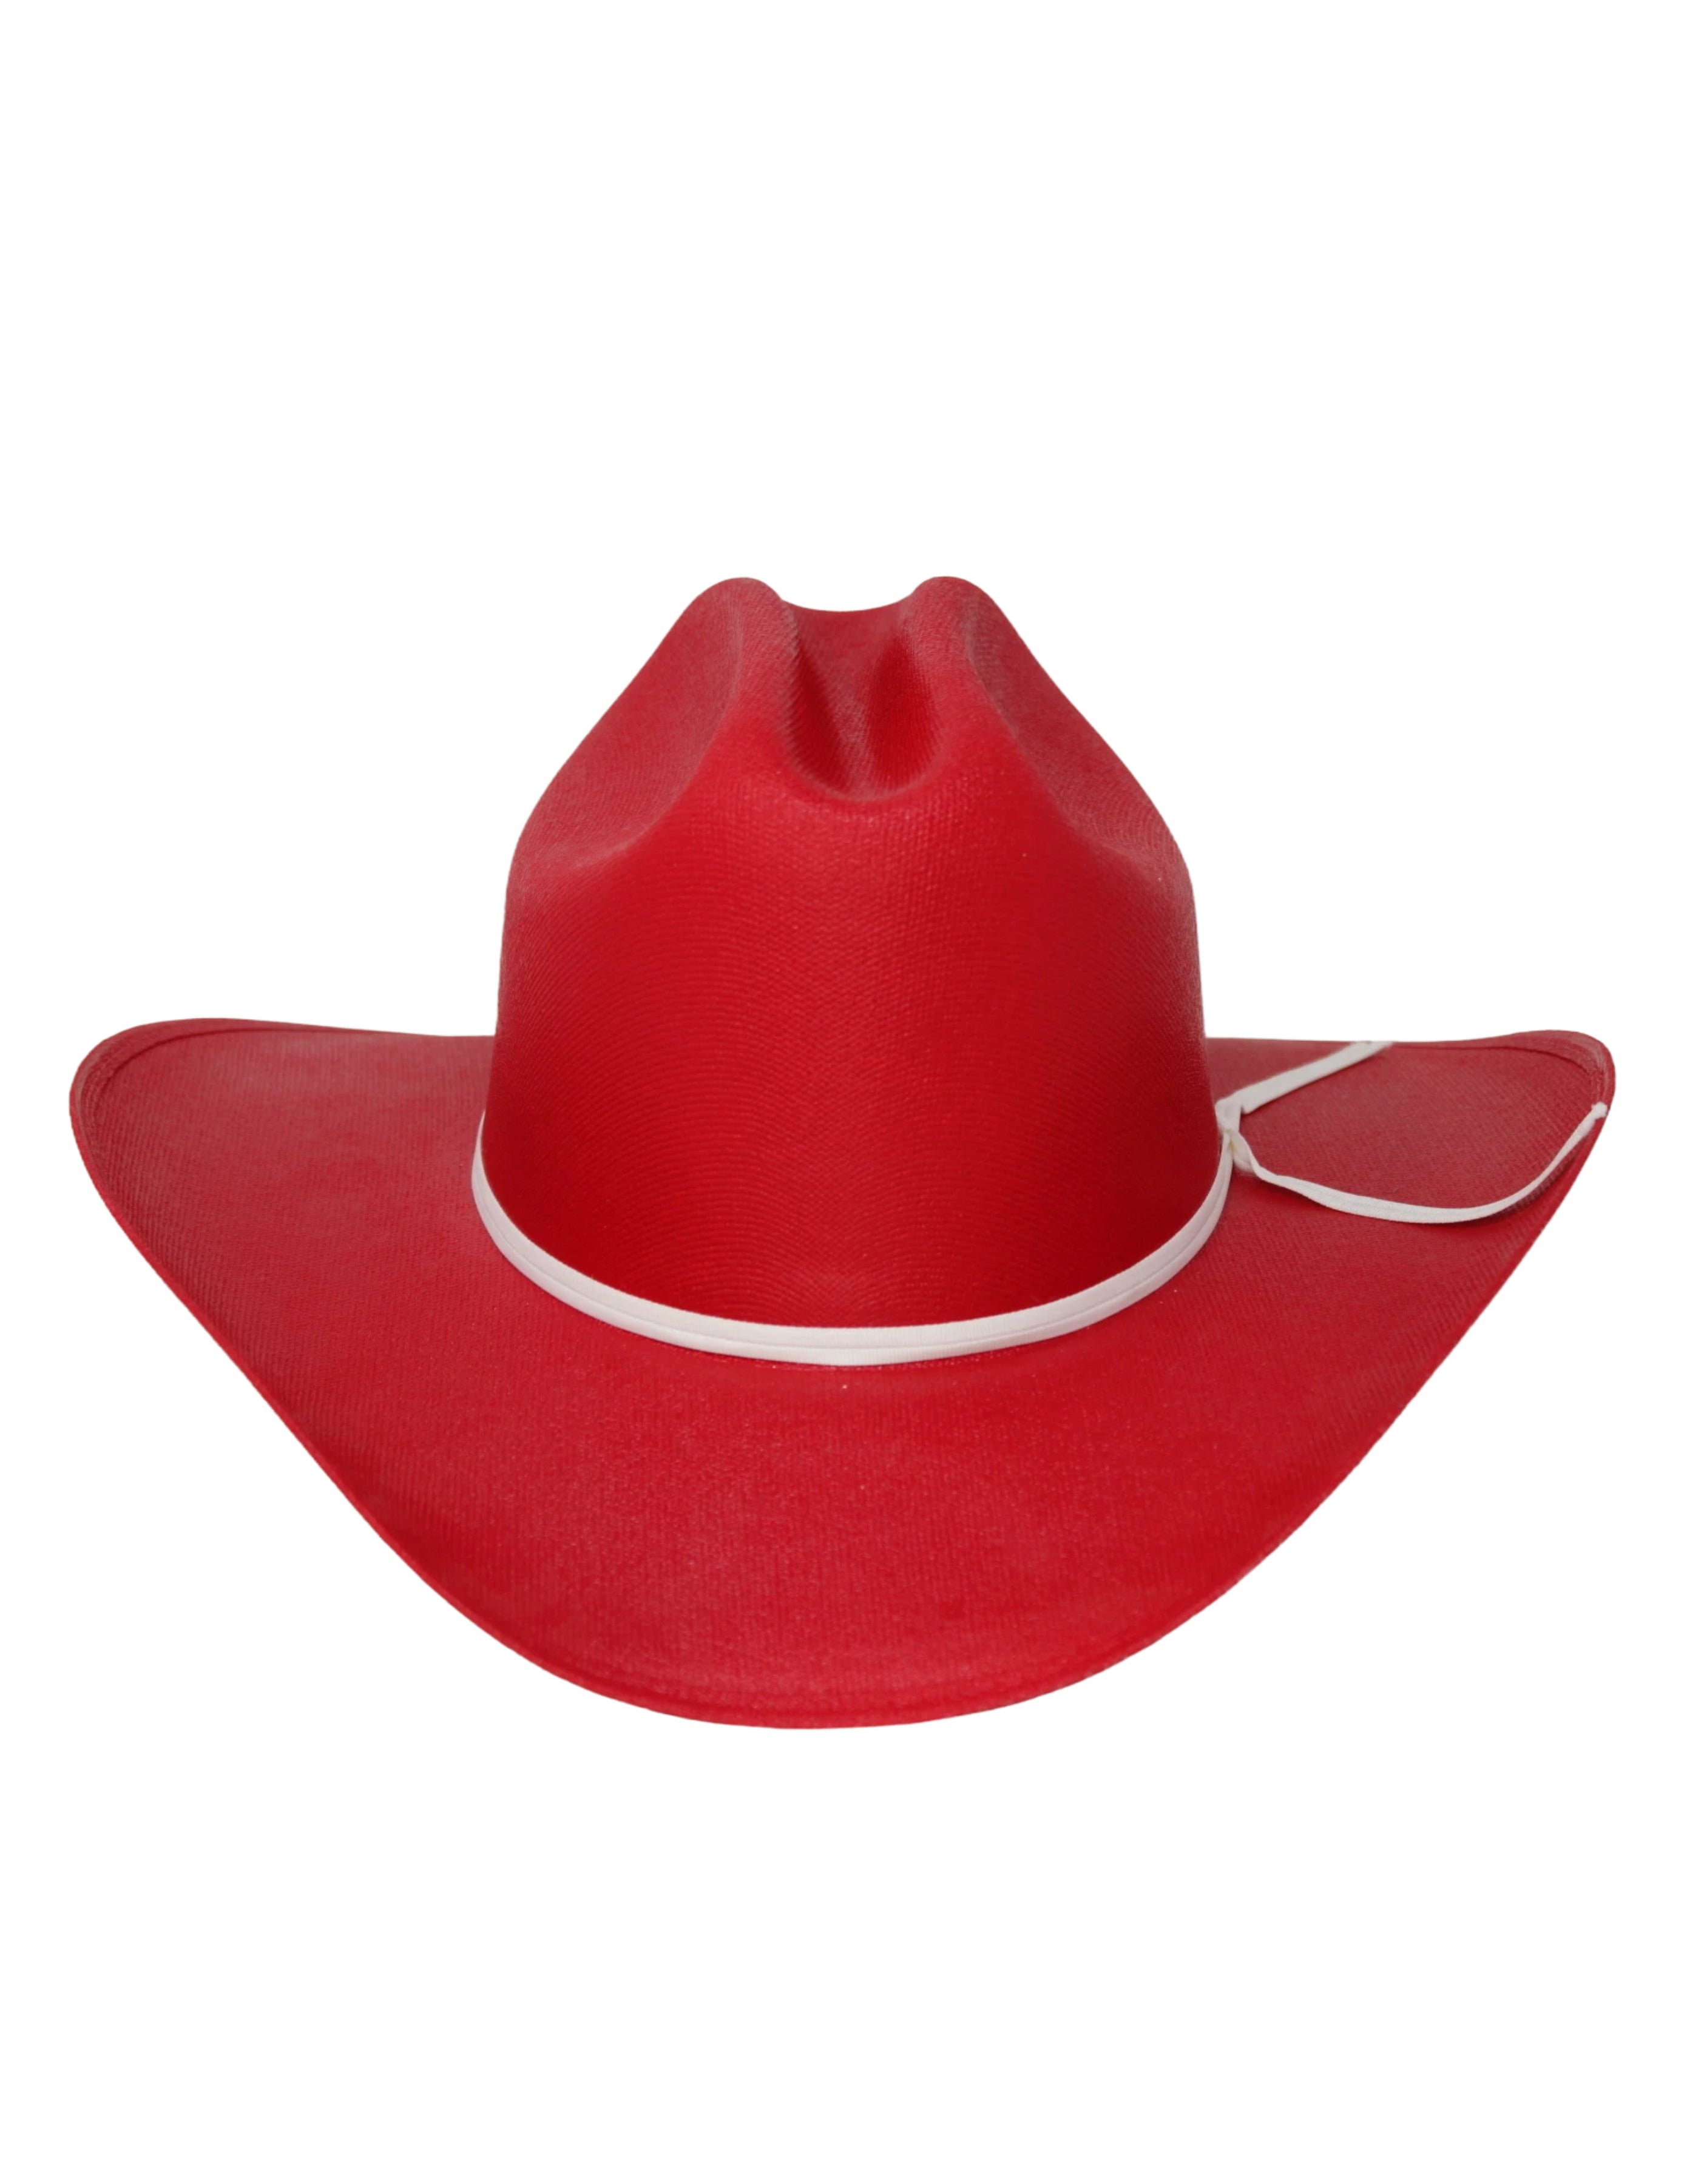 Little Red Kids Straw Hat